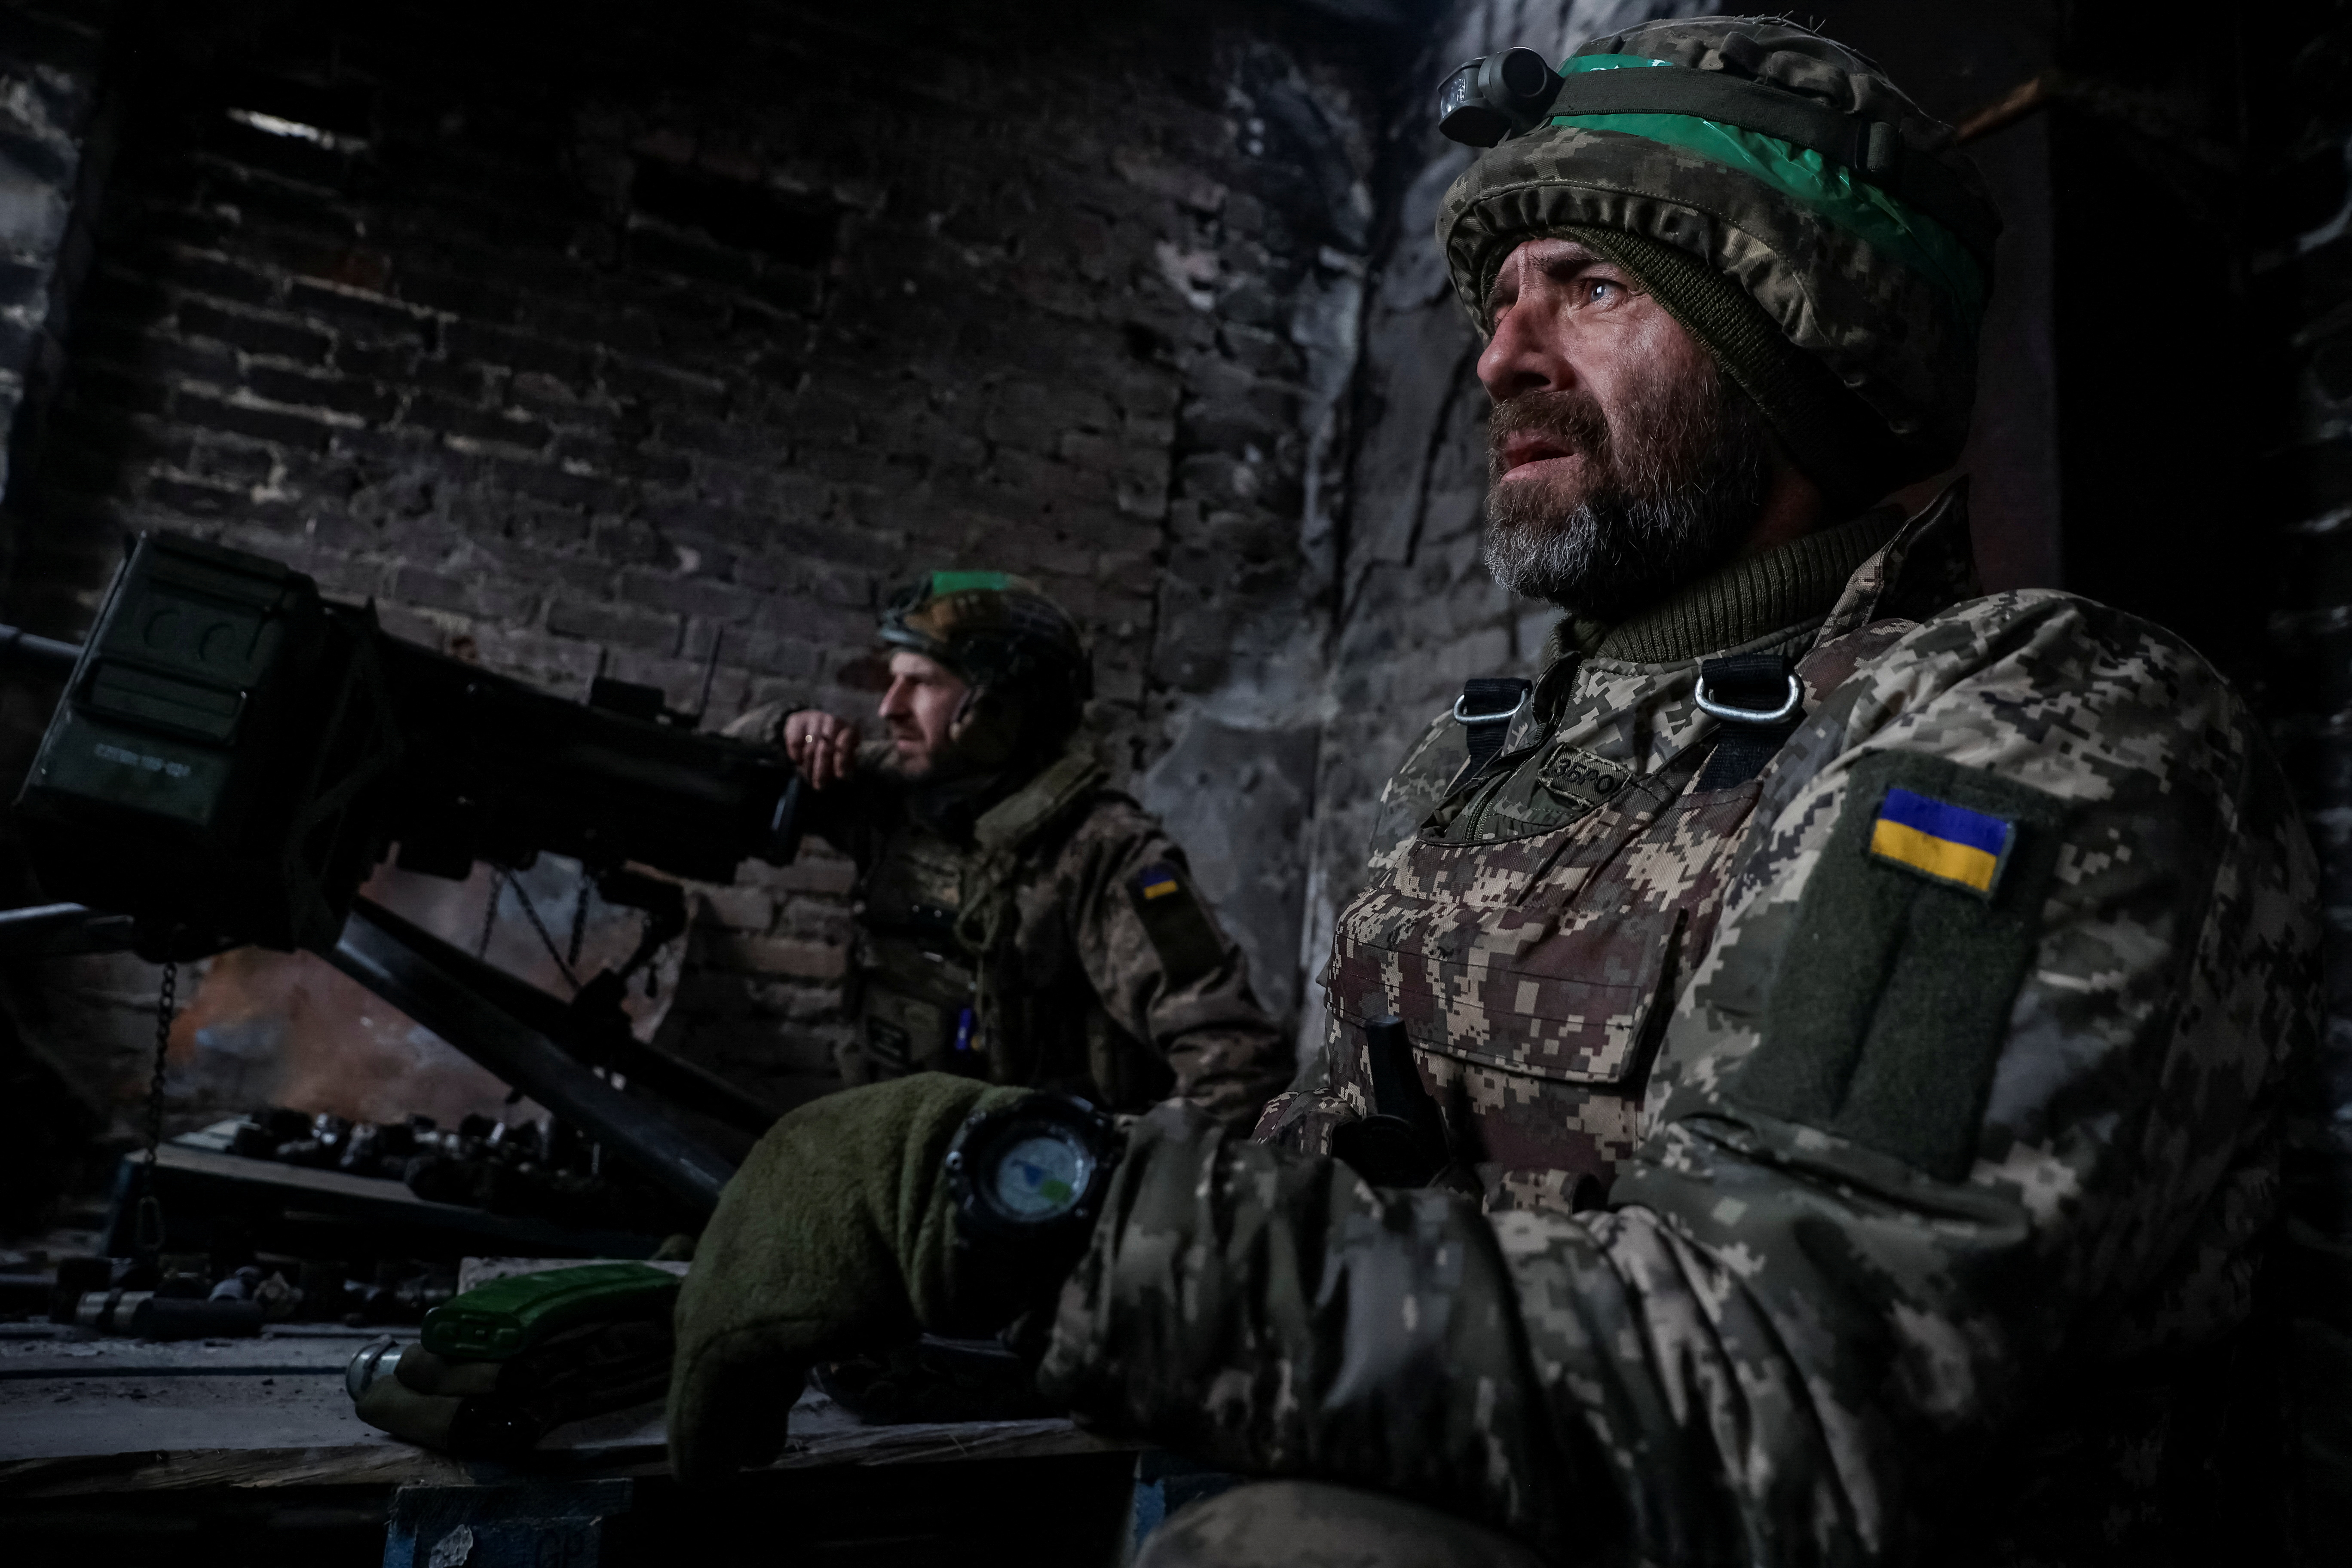 Militares ucranianos cerca de un lanzagranadas automático en sus posiciones, mientras continúa el ataque de Rusia contra Ucrania, en la ciudad de Bakhmut. (Radio Free Europe/Radio Liberty/Serhii Nuzhnenko via REUTERS)